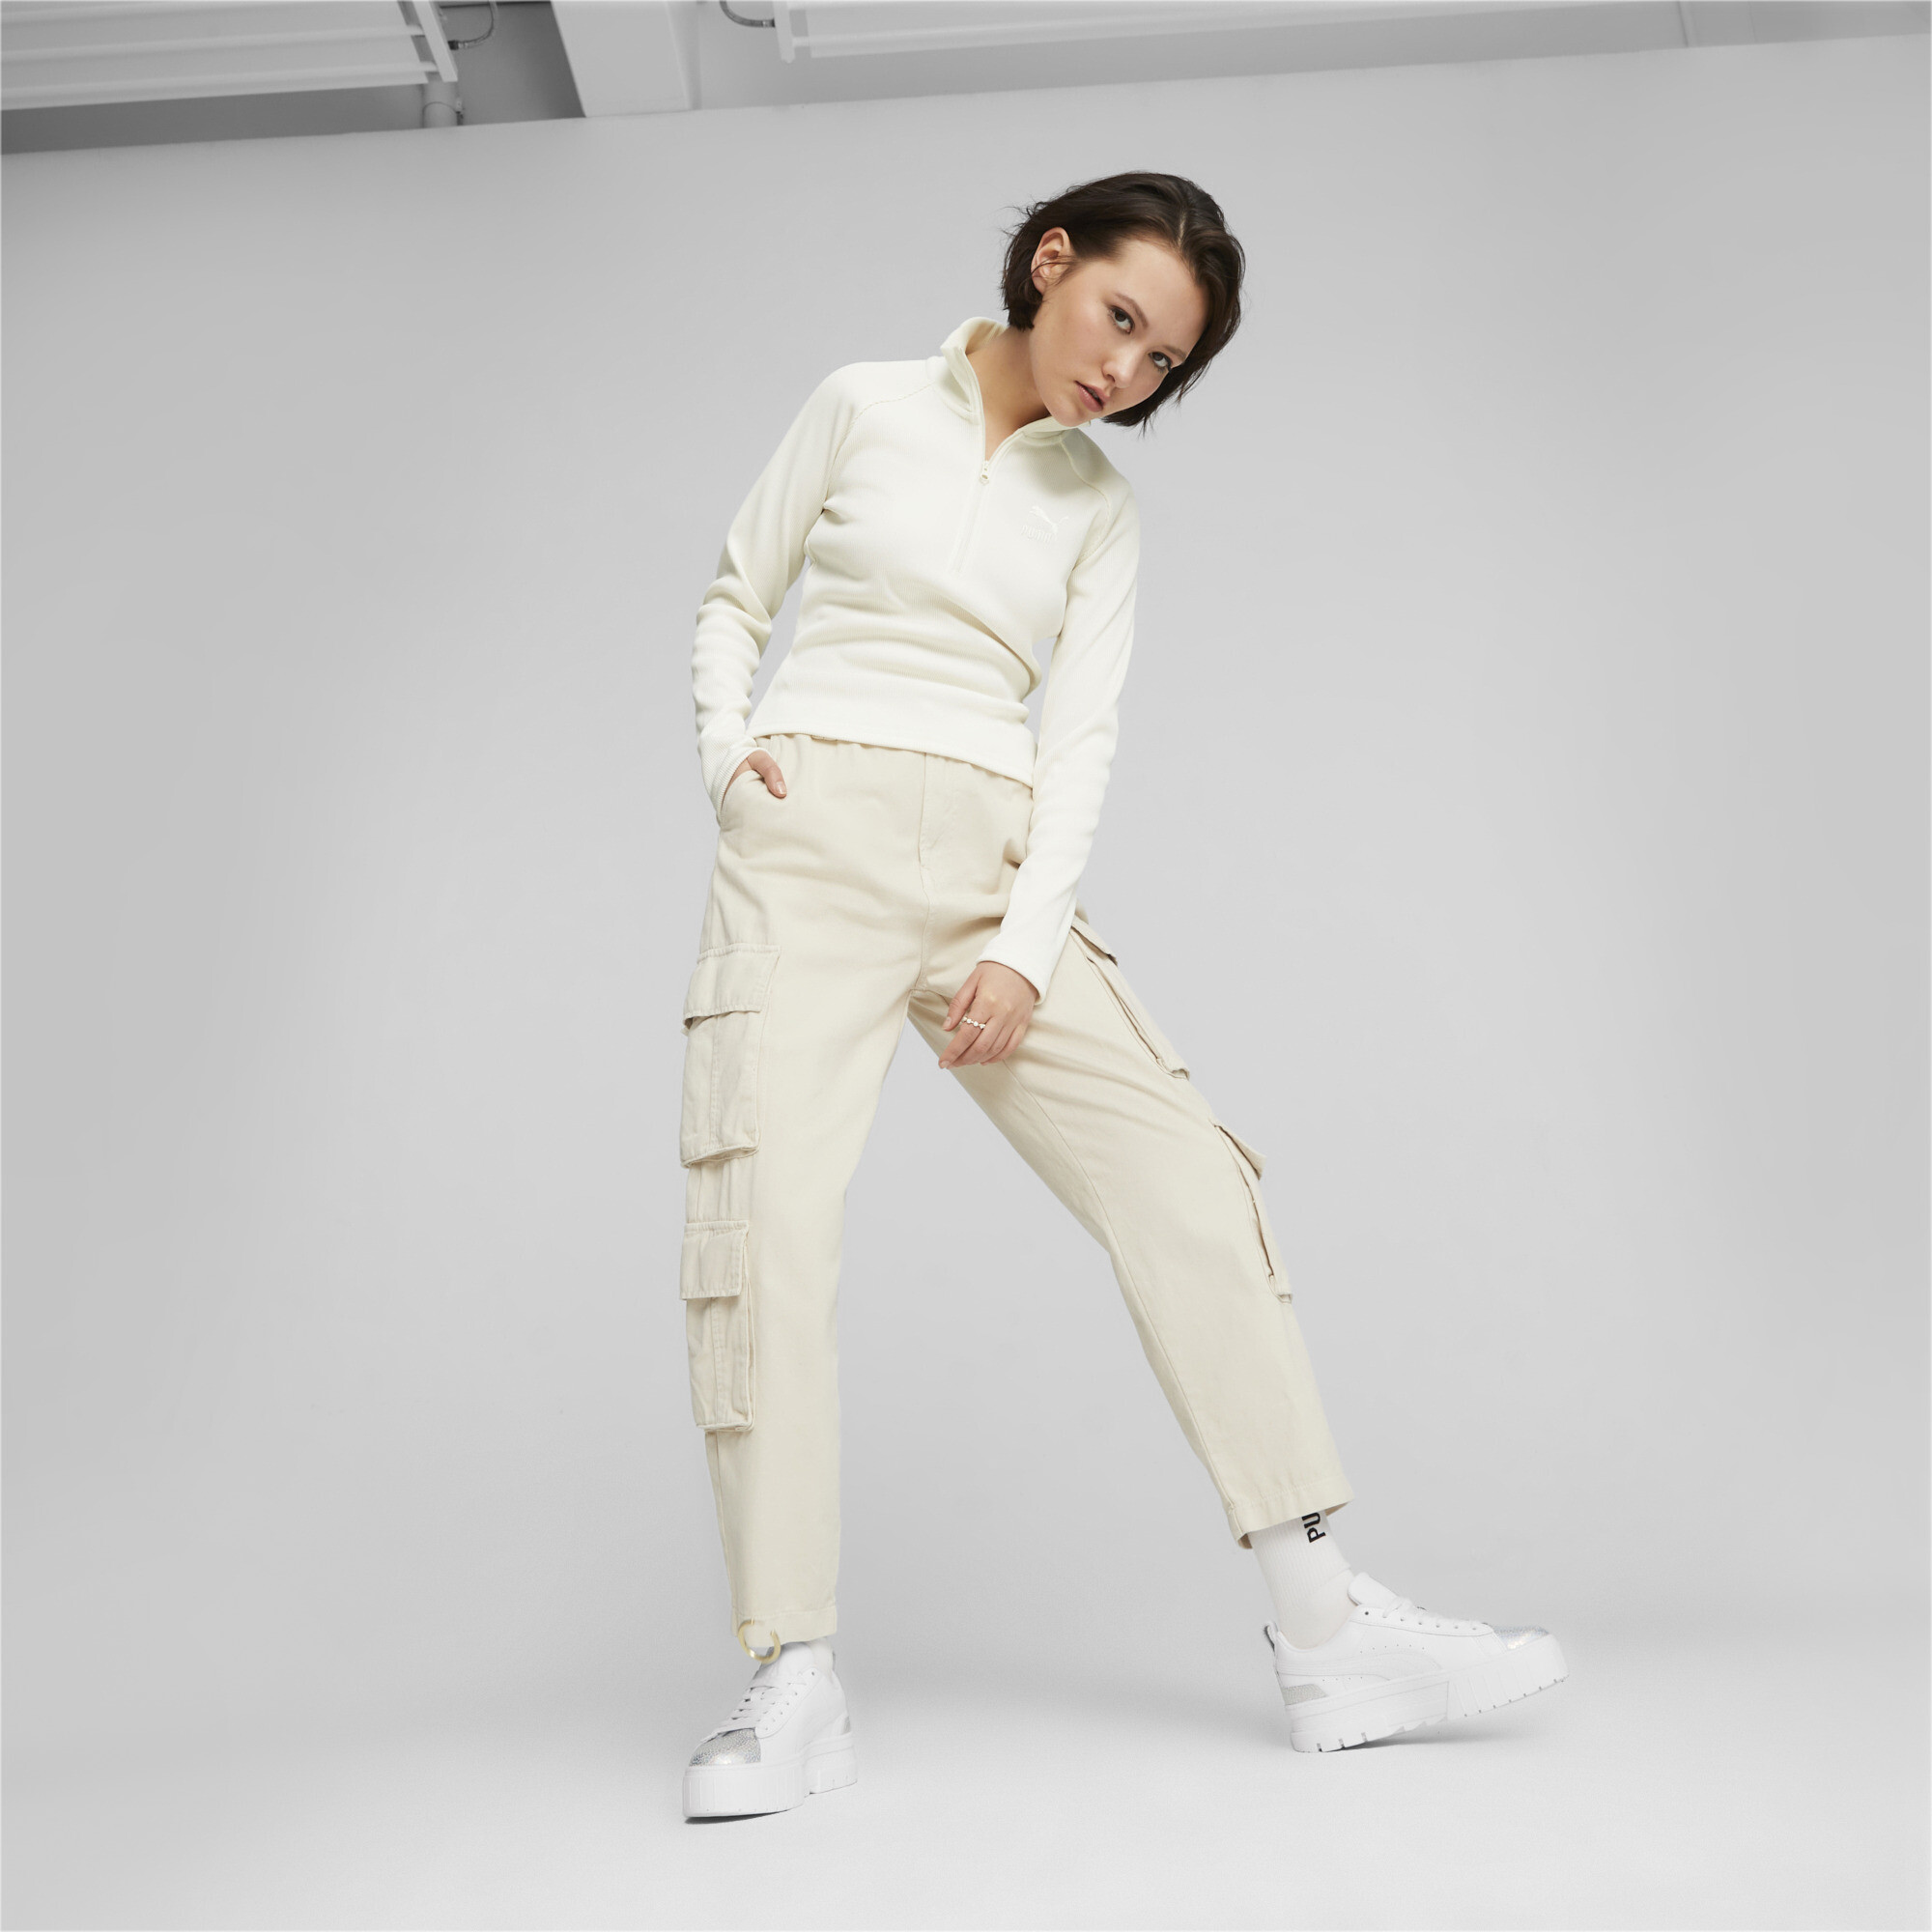 Women's PUMA Mayze Tomorrowland Fashion Sneakers Women In White, Size EU 38